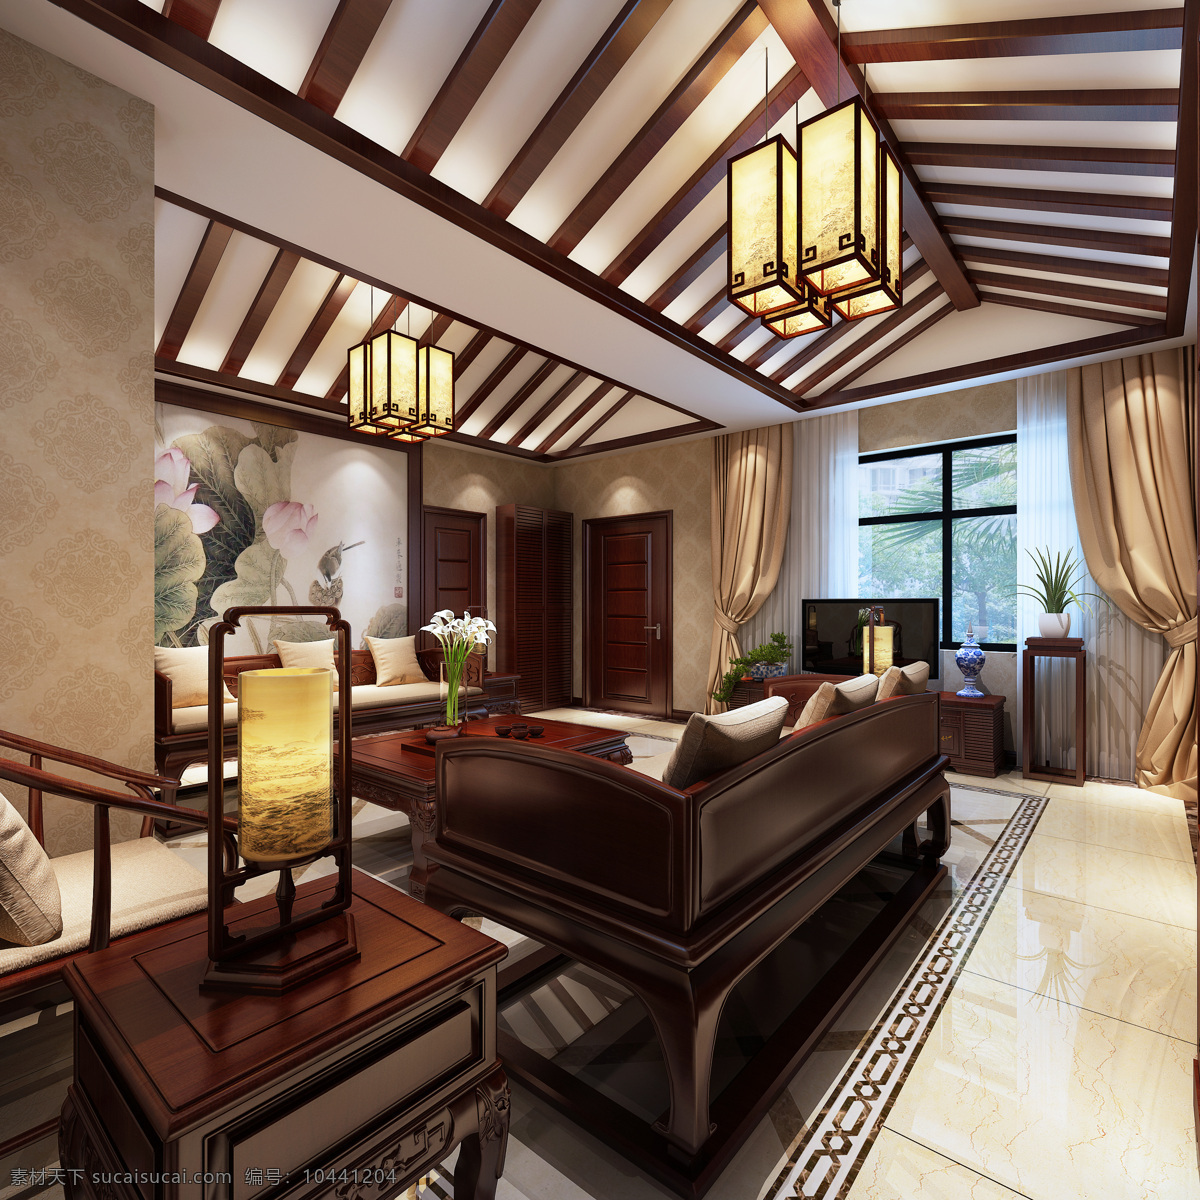 中式 清雅 客厅 瓷砖 地板 室内装修 效果图 客厅装修 瓷砖地板 深色地毯 块状吊灯